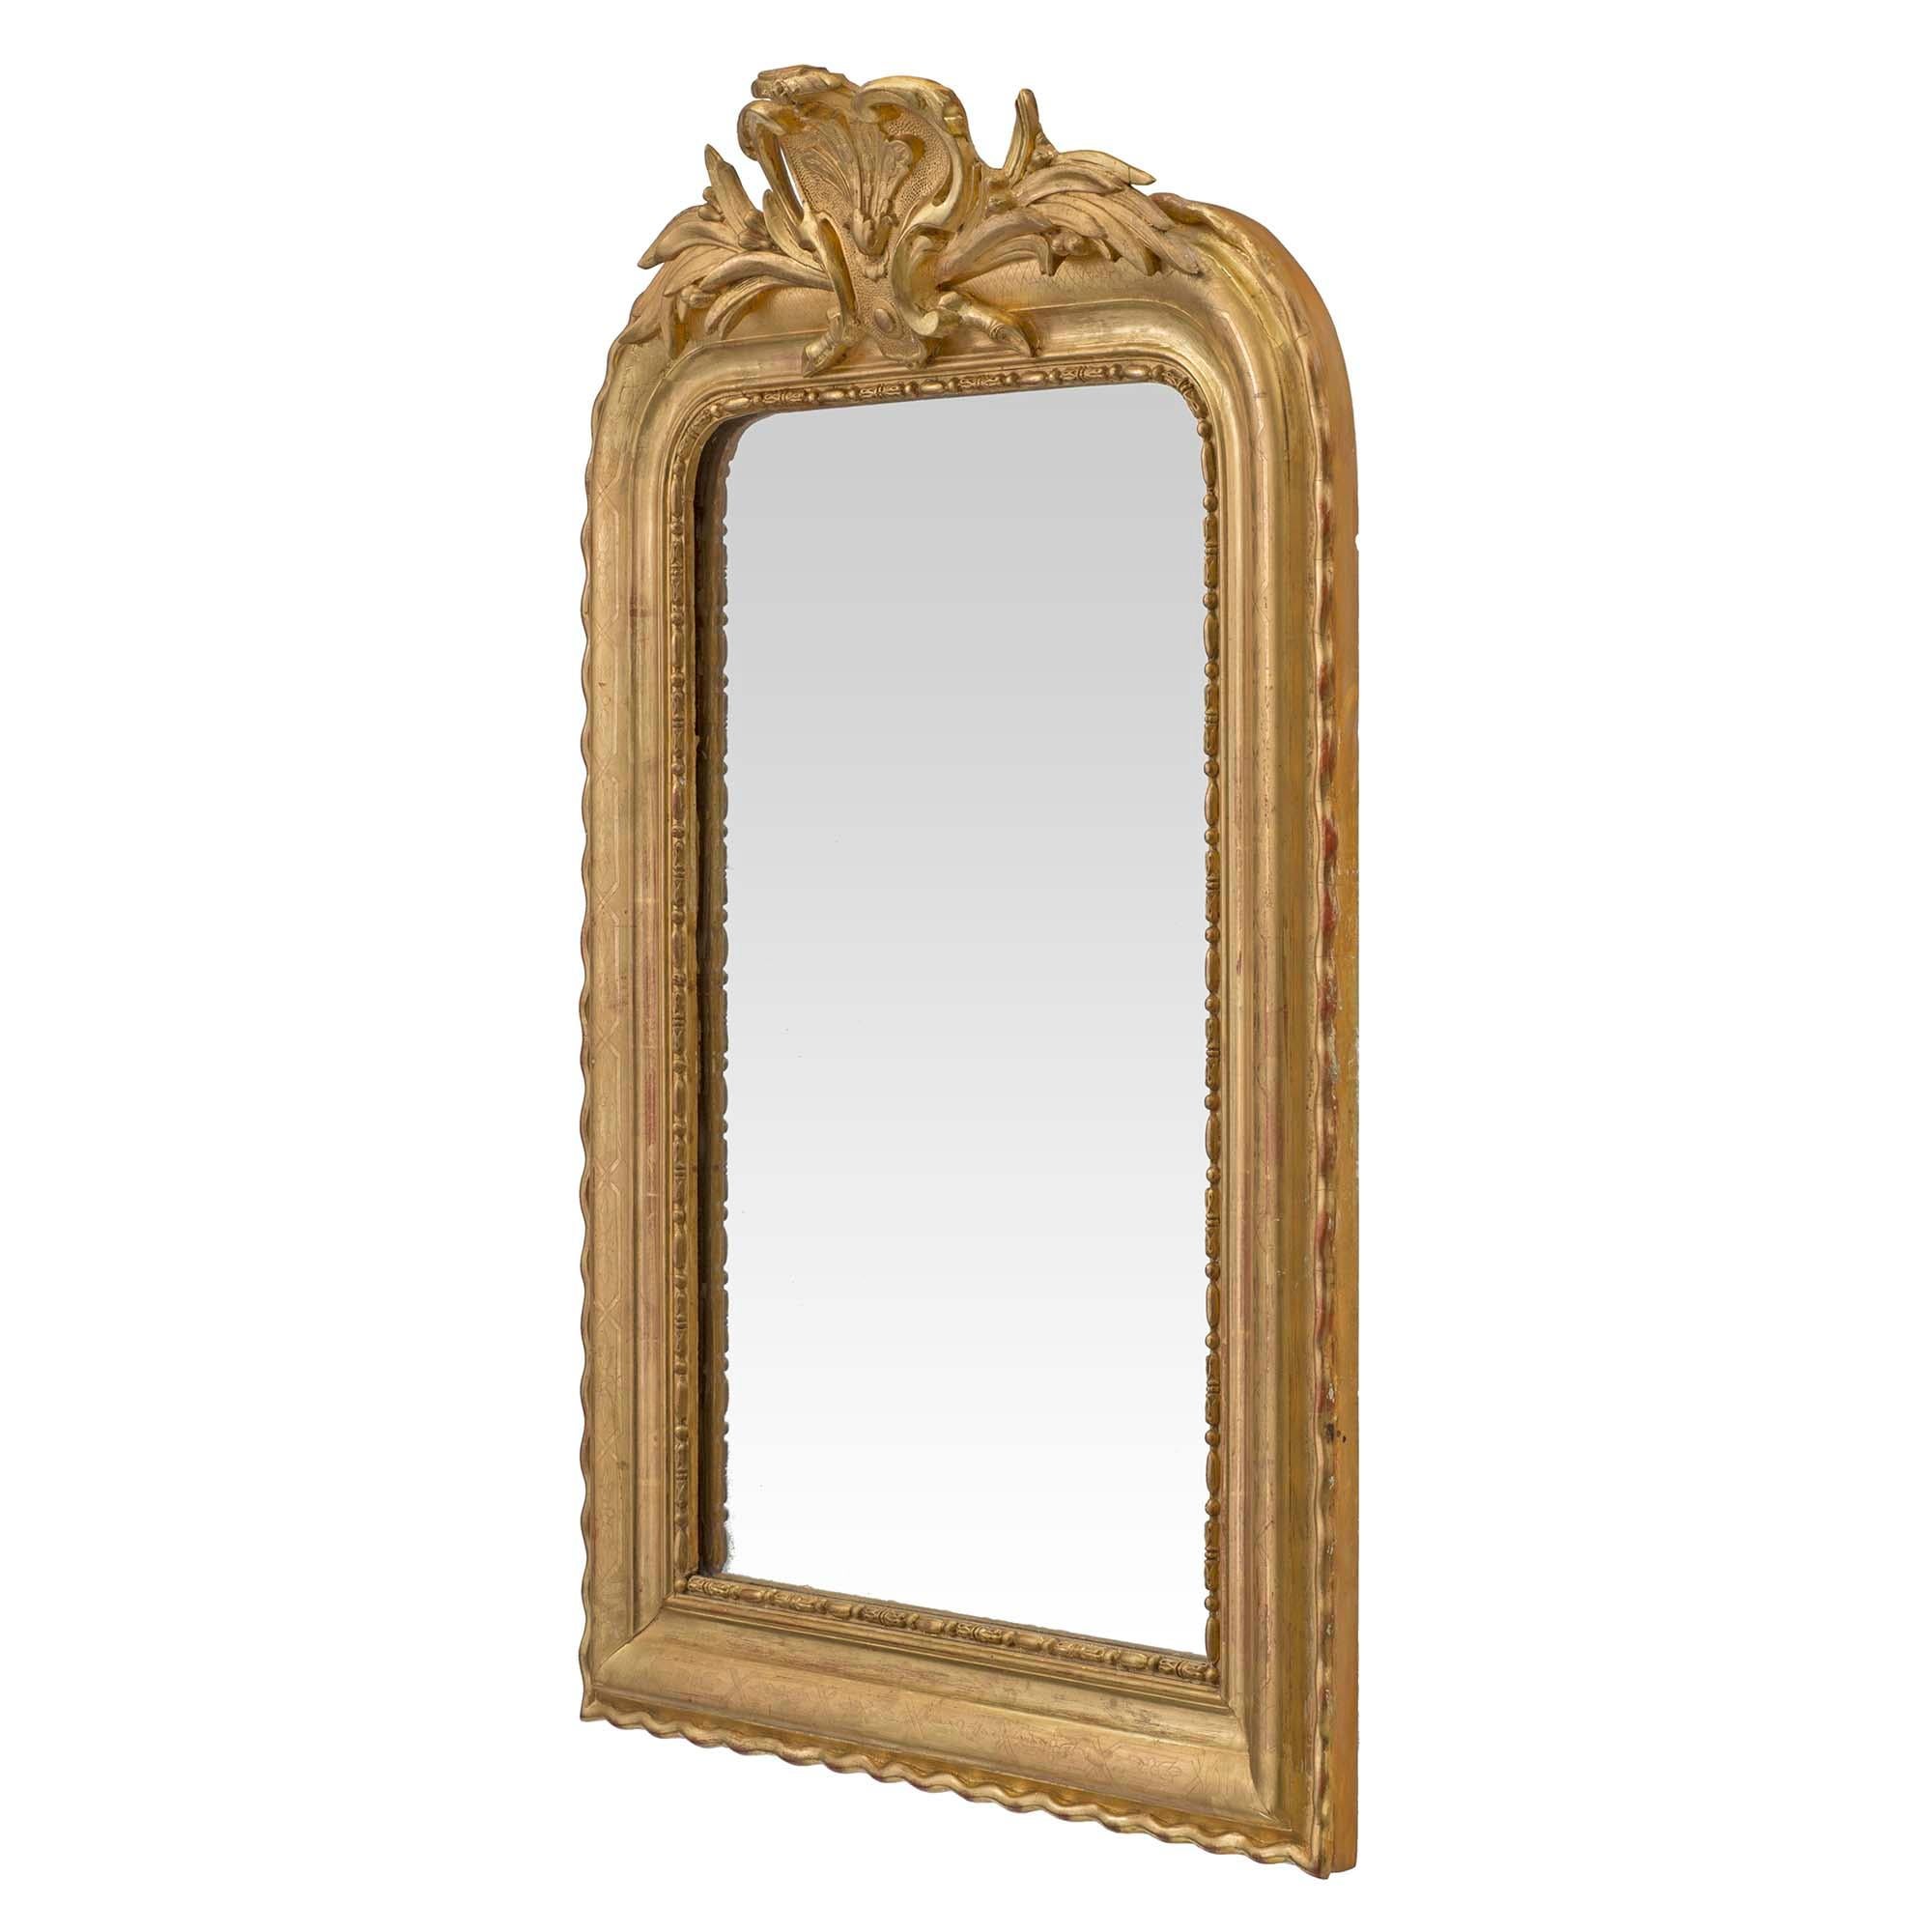 Un beau miroir français du 19ème siècle en bois doré de style Louis XVI. La plaque de miroir d'origine est bordée d'une garniture en forme d'œuf et de fléchette à l'intérieur du miroir moulé aux bords chantournés. La couronne supérieure est ornée